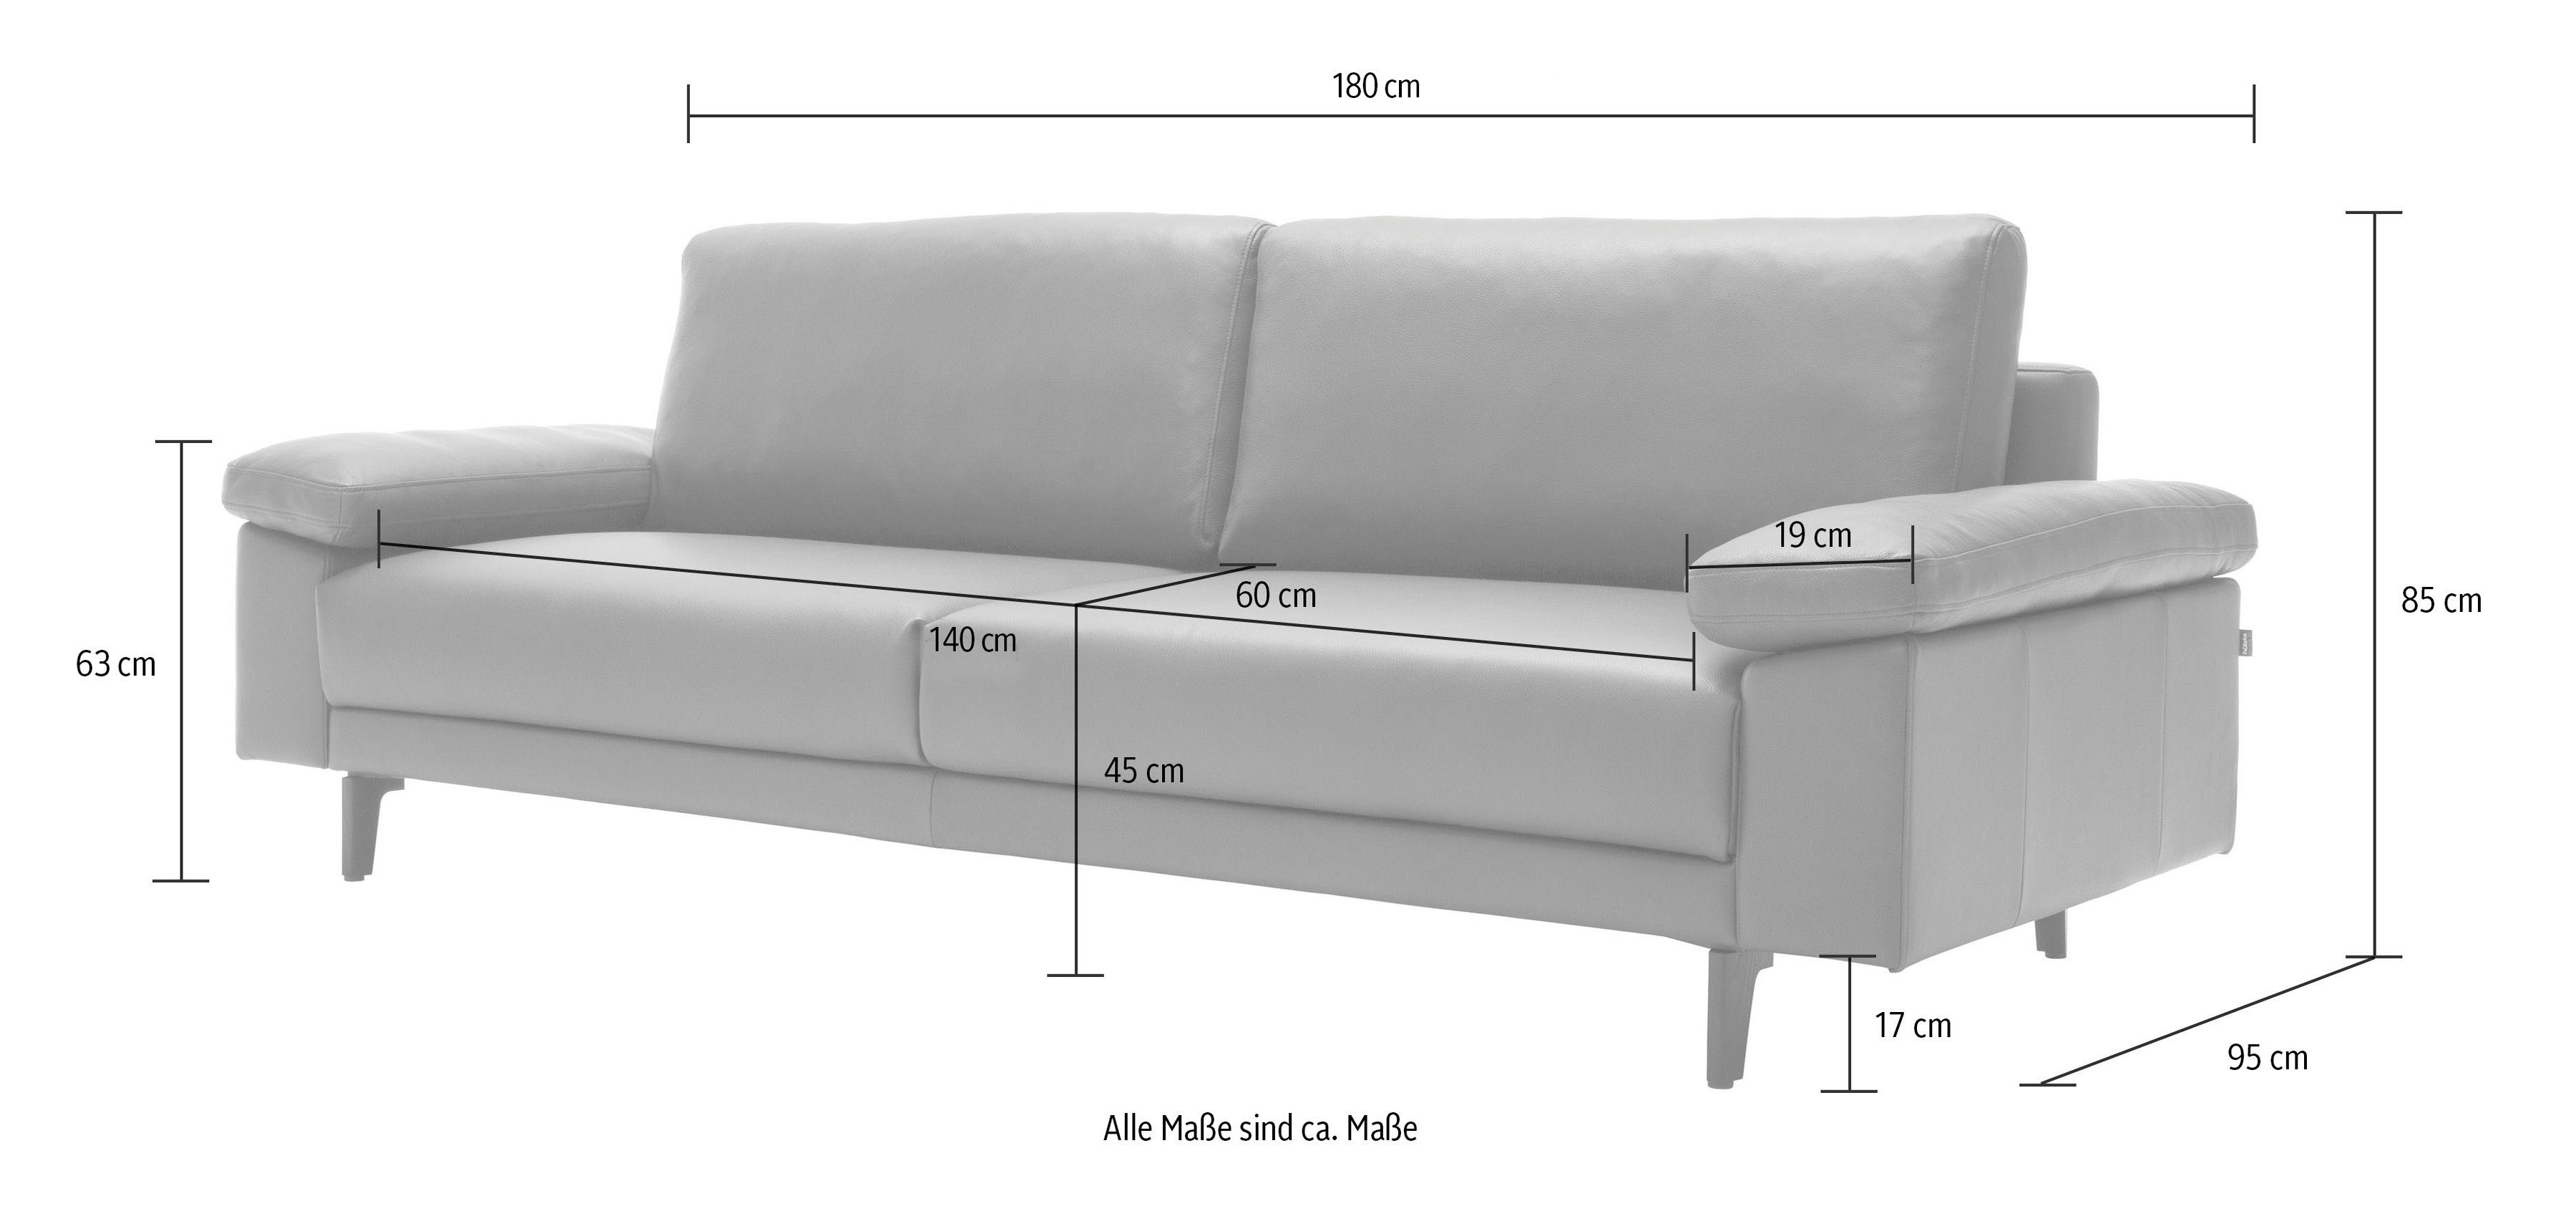 hs.450 sofa 2-Sitzer hülsta